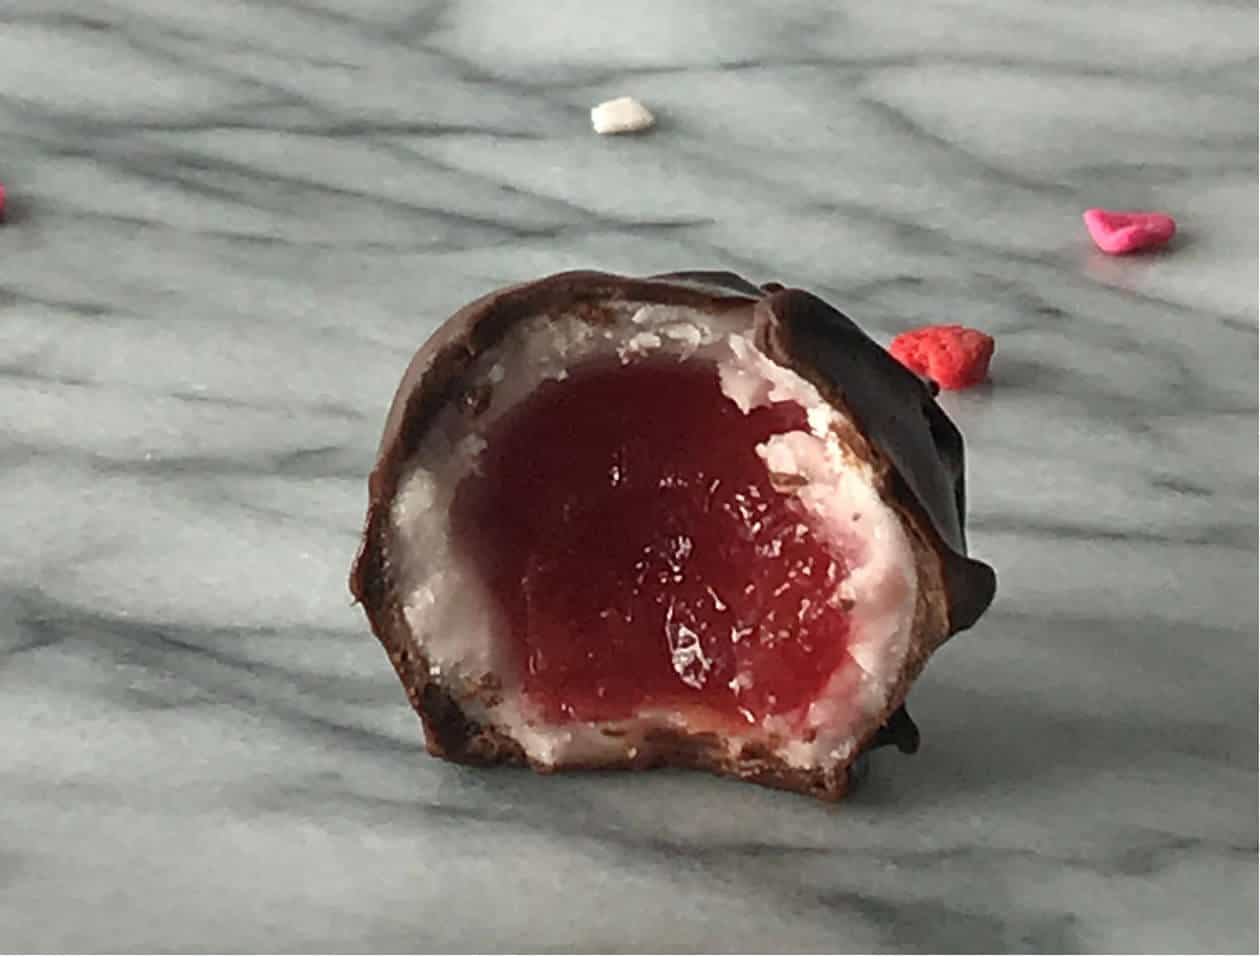 Homemade Chocolate Covered Cherries